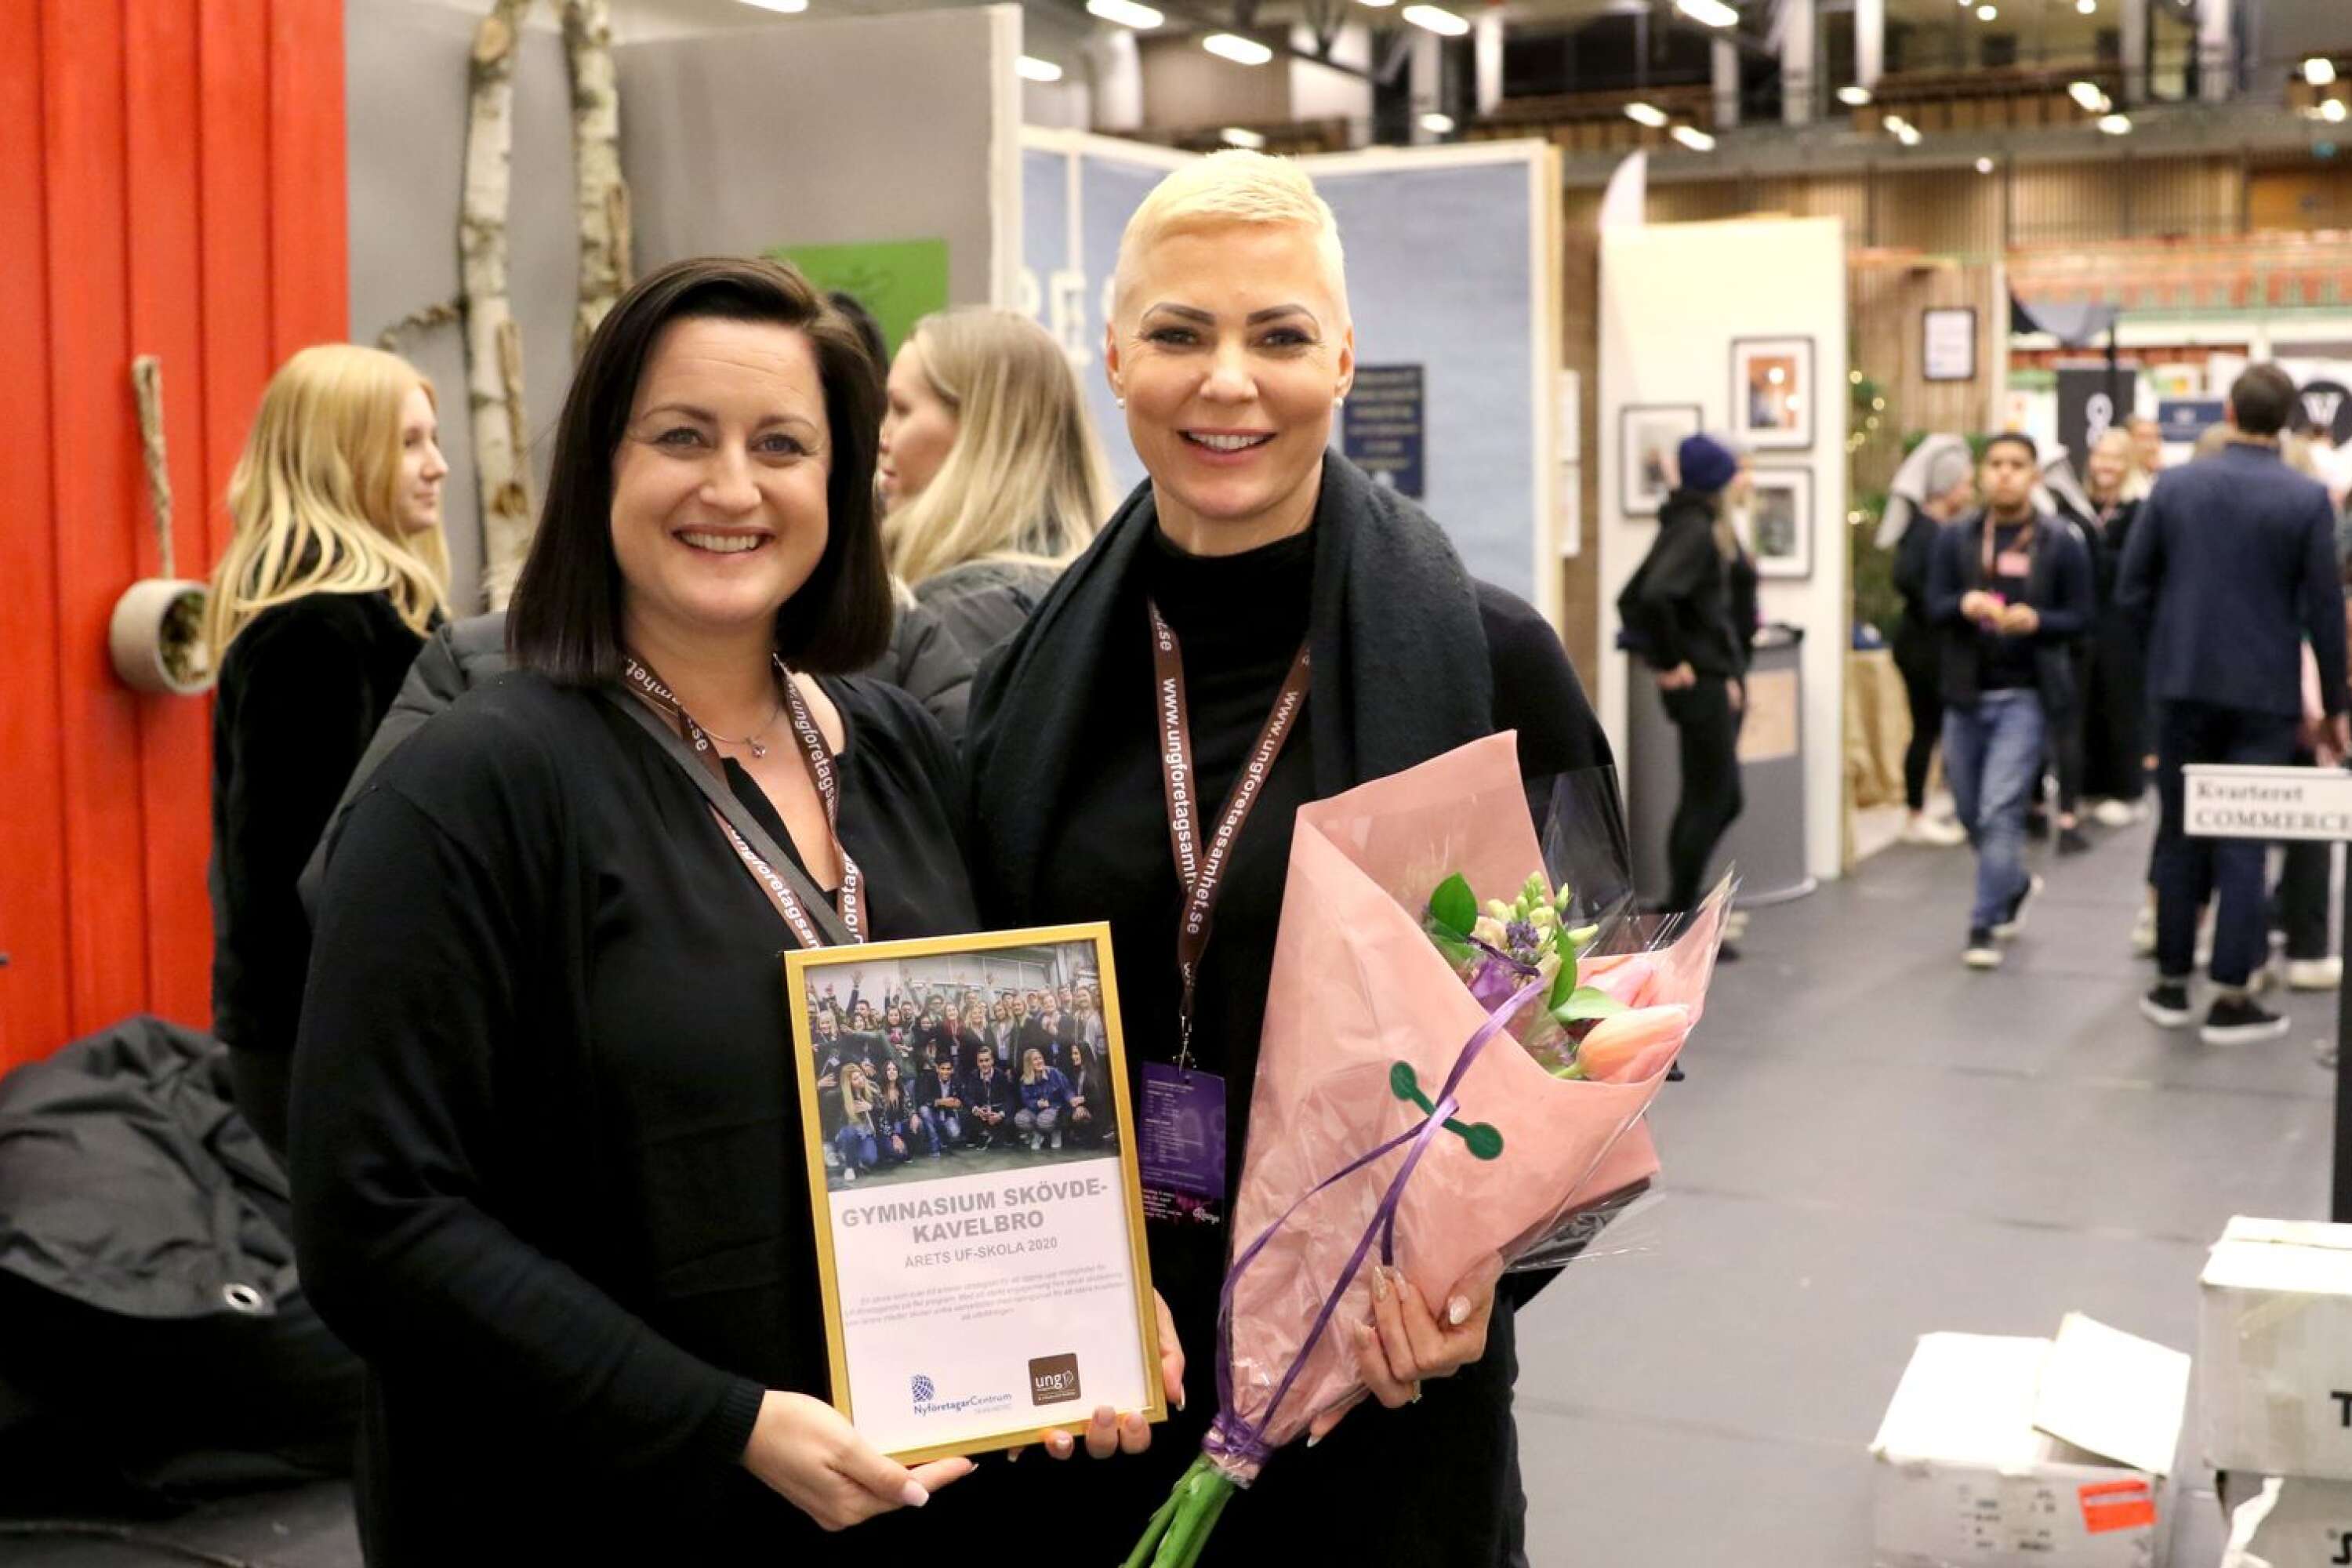 Susanne Rudolfsson och Madeleine Wetterberg Mendoza från Kavelbrogymnasiet var glada för skolans utmärkelse.